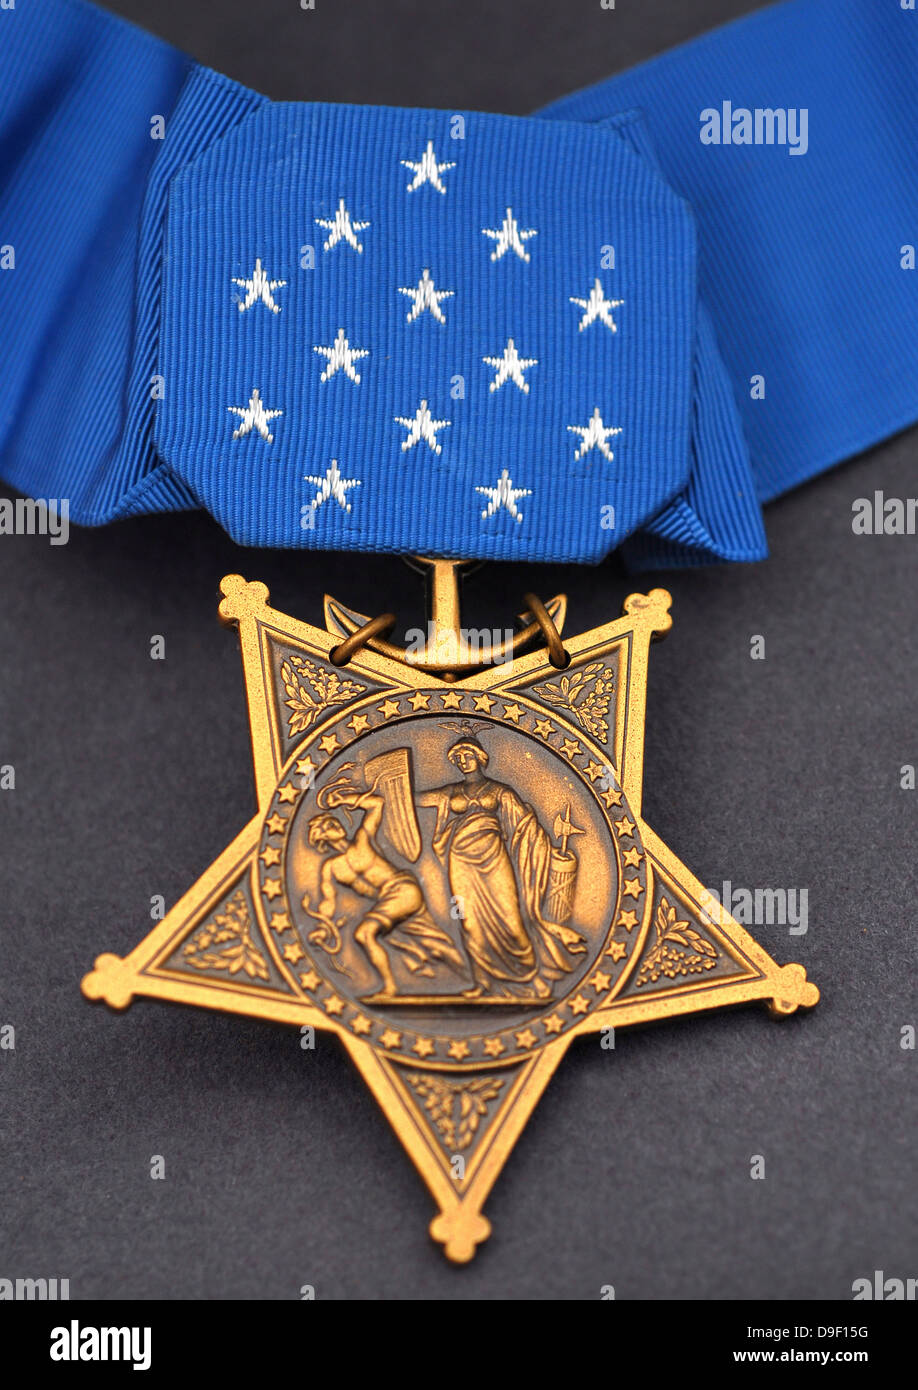 Close-up della medaglia d'onore attribuito a Navy SEALs, la più alta decorazione militare assegnato da parte del governo degli STATI UNITI Foto Stock